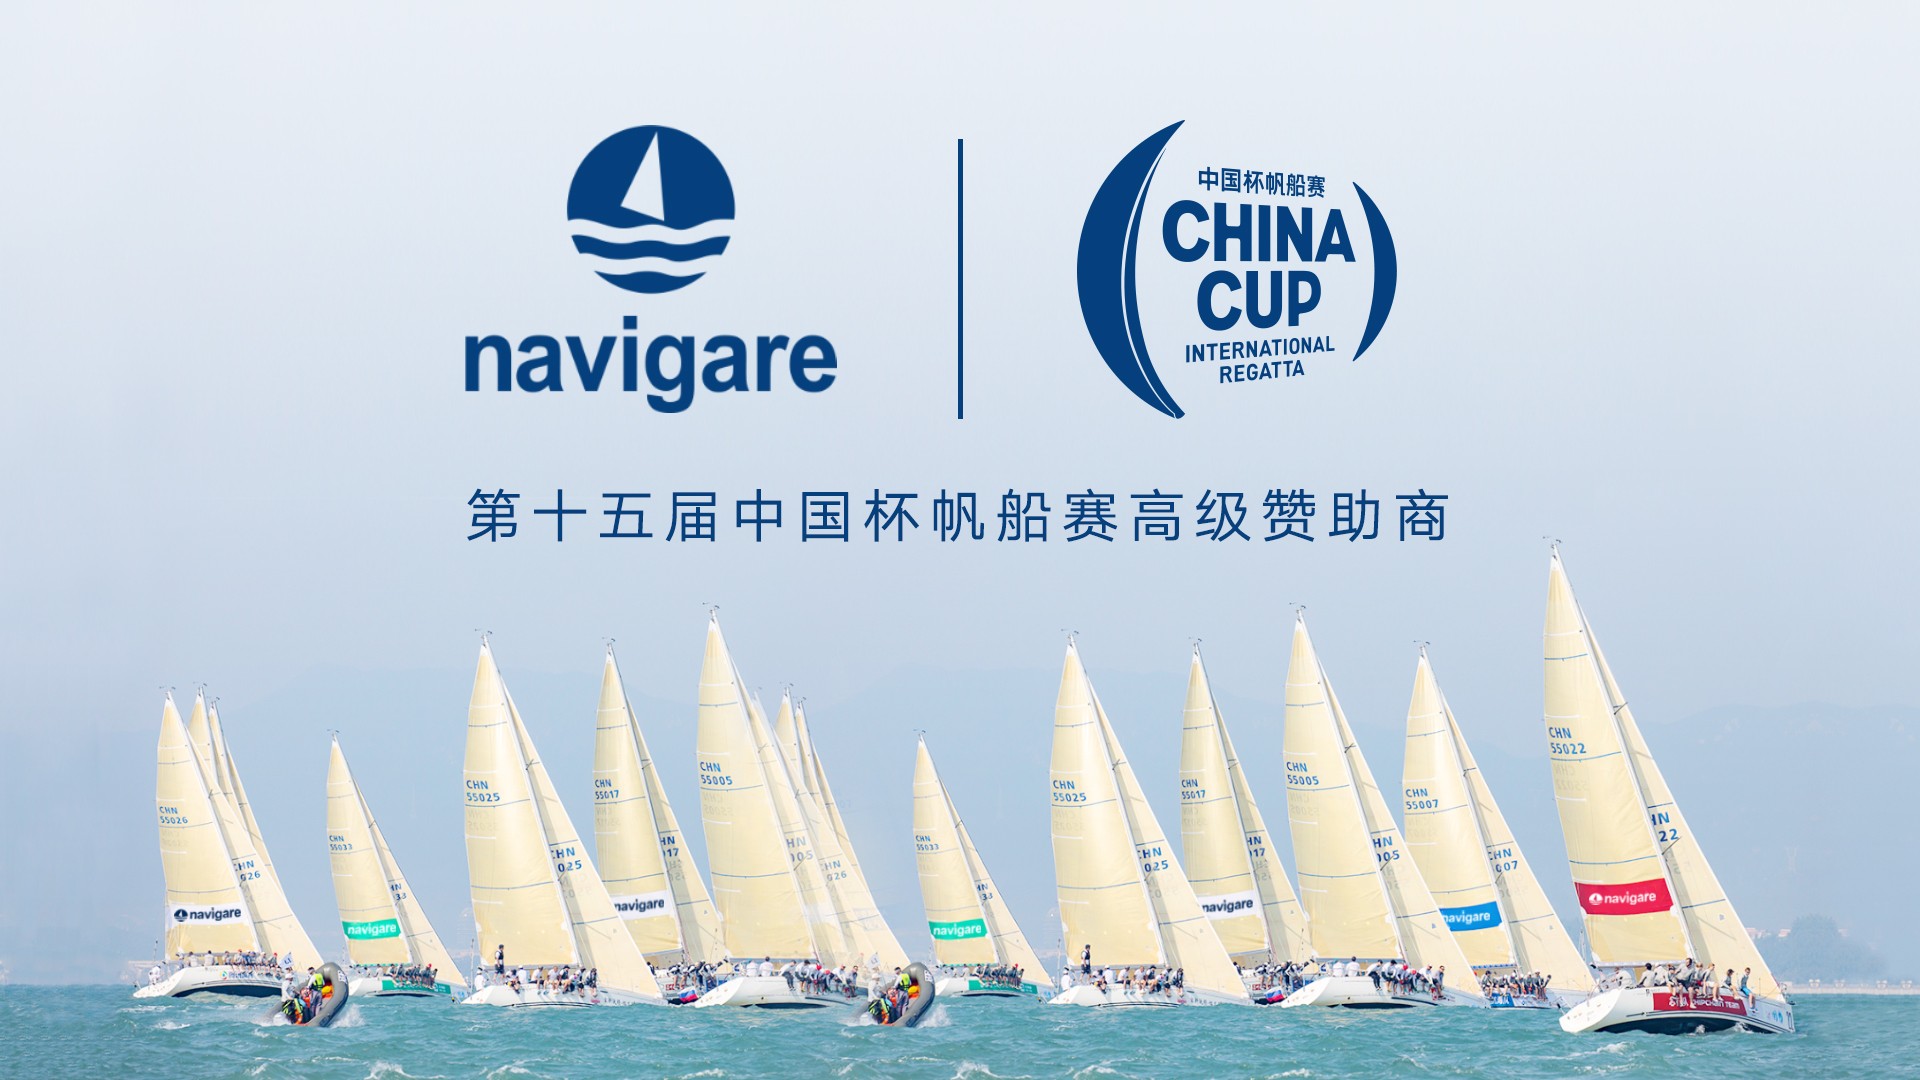 第15届中国杯帆船赛即将开幕，和navigare一起扬帆远航！